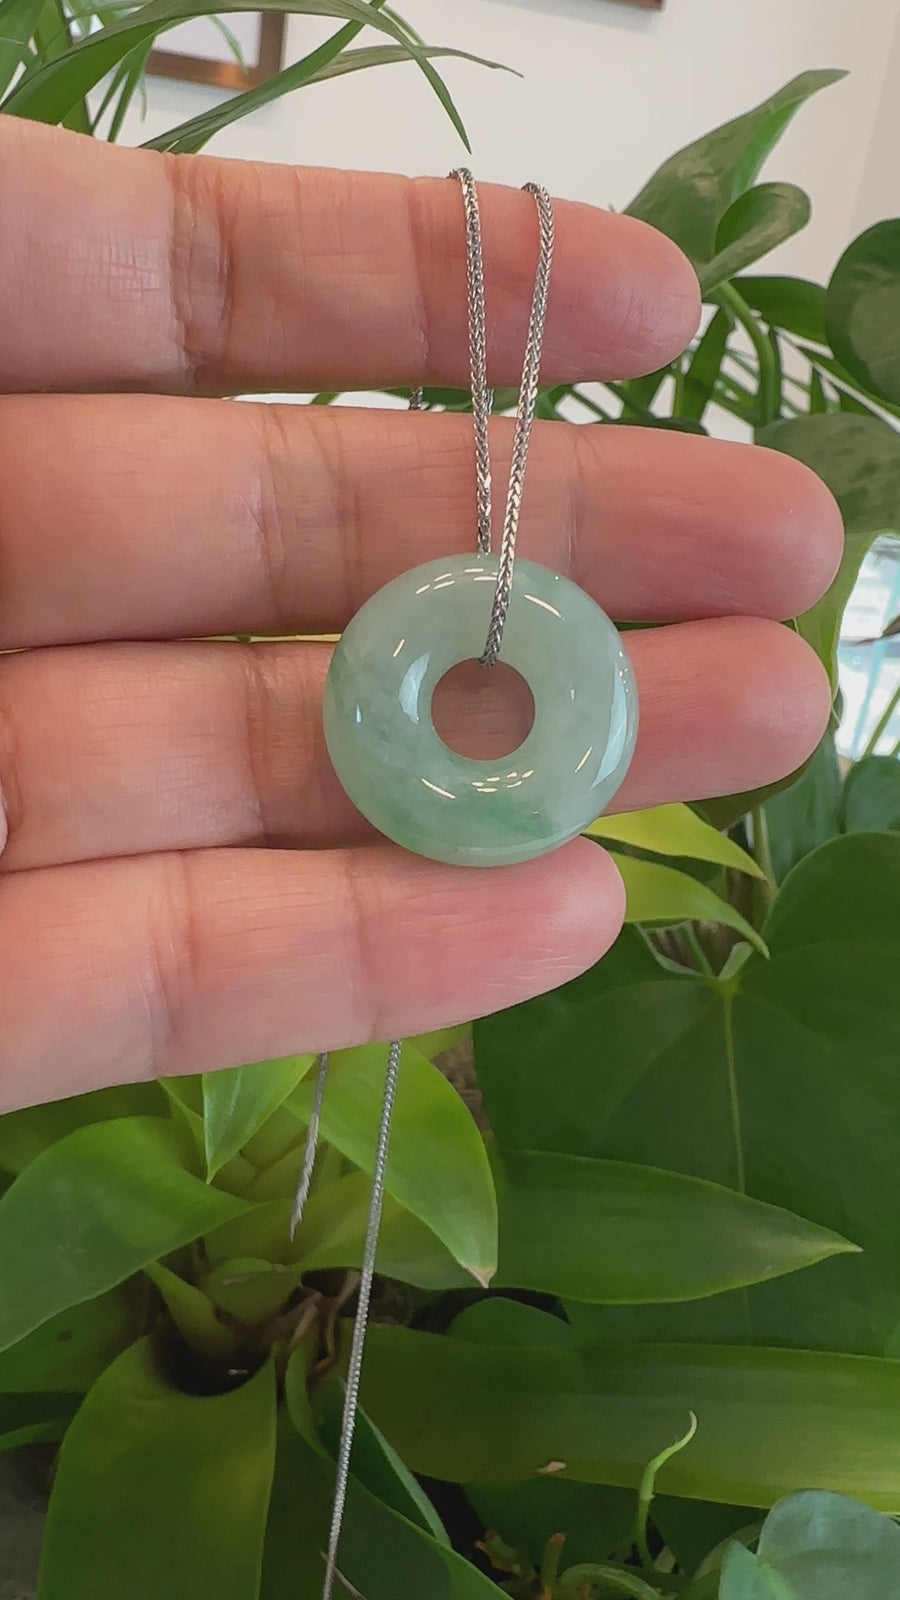 Baikalla "Good Luck Button" Necklace Ice Green Jadeite Jade Pendant For Men